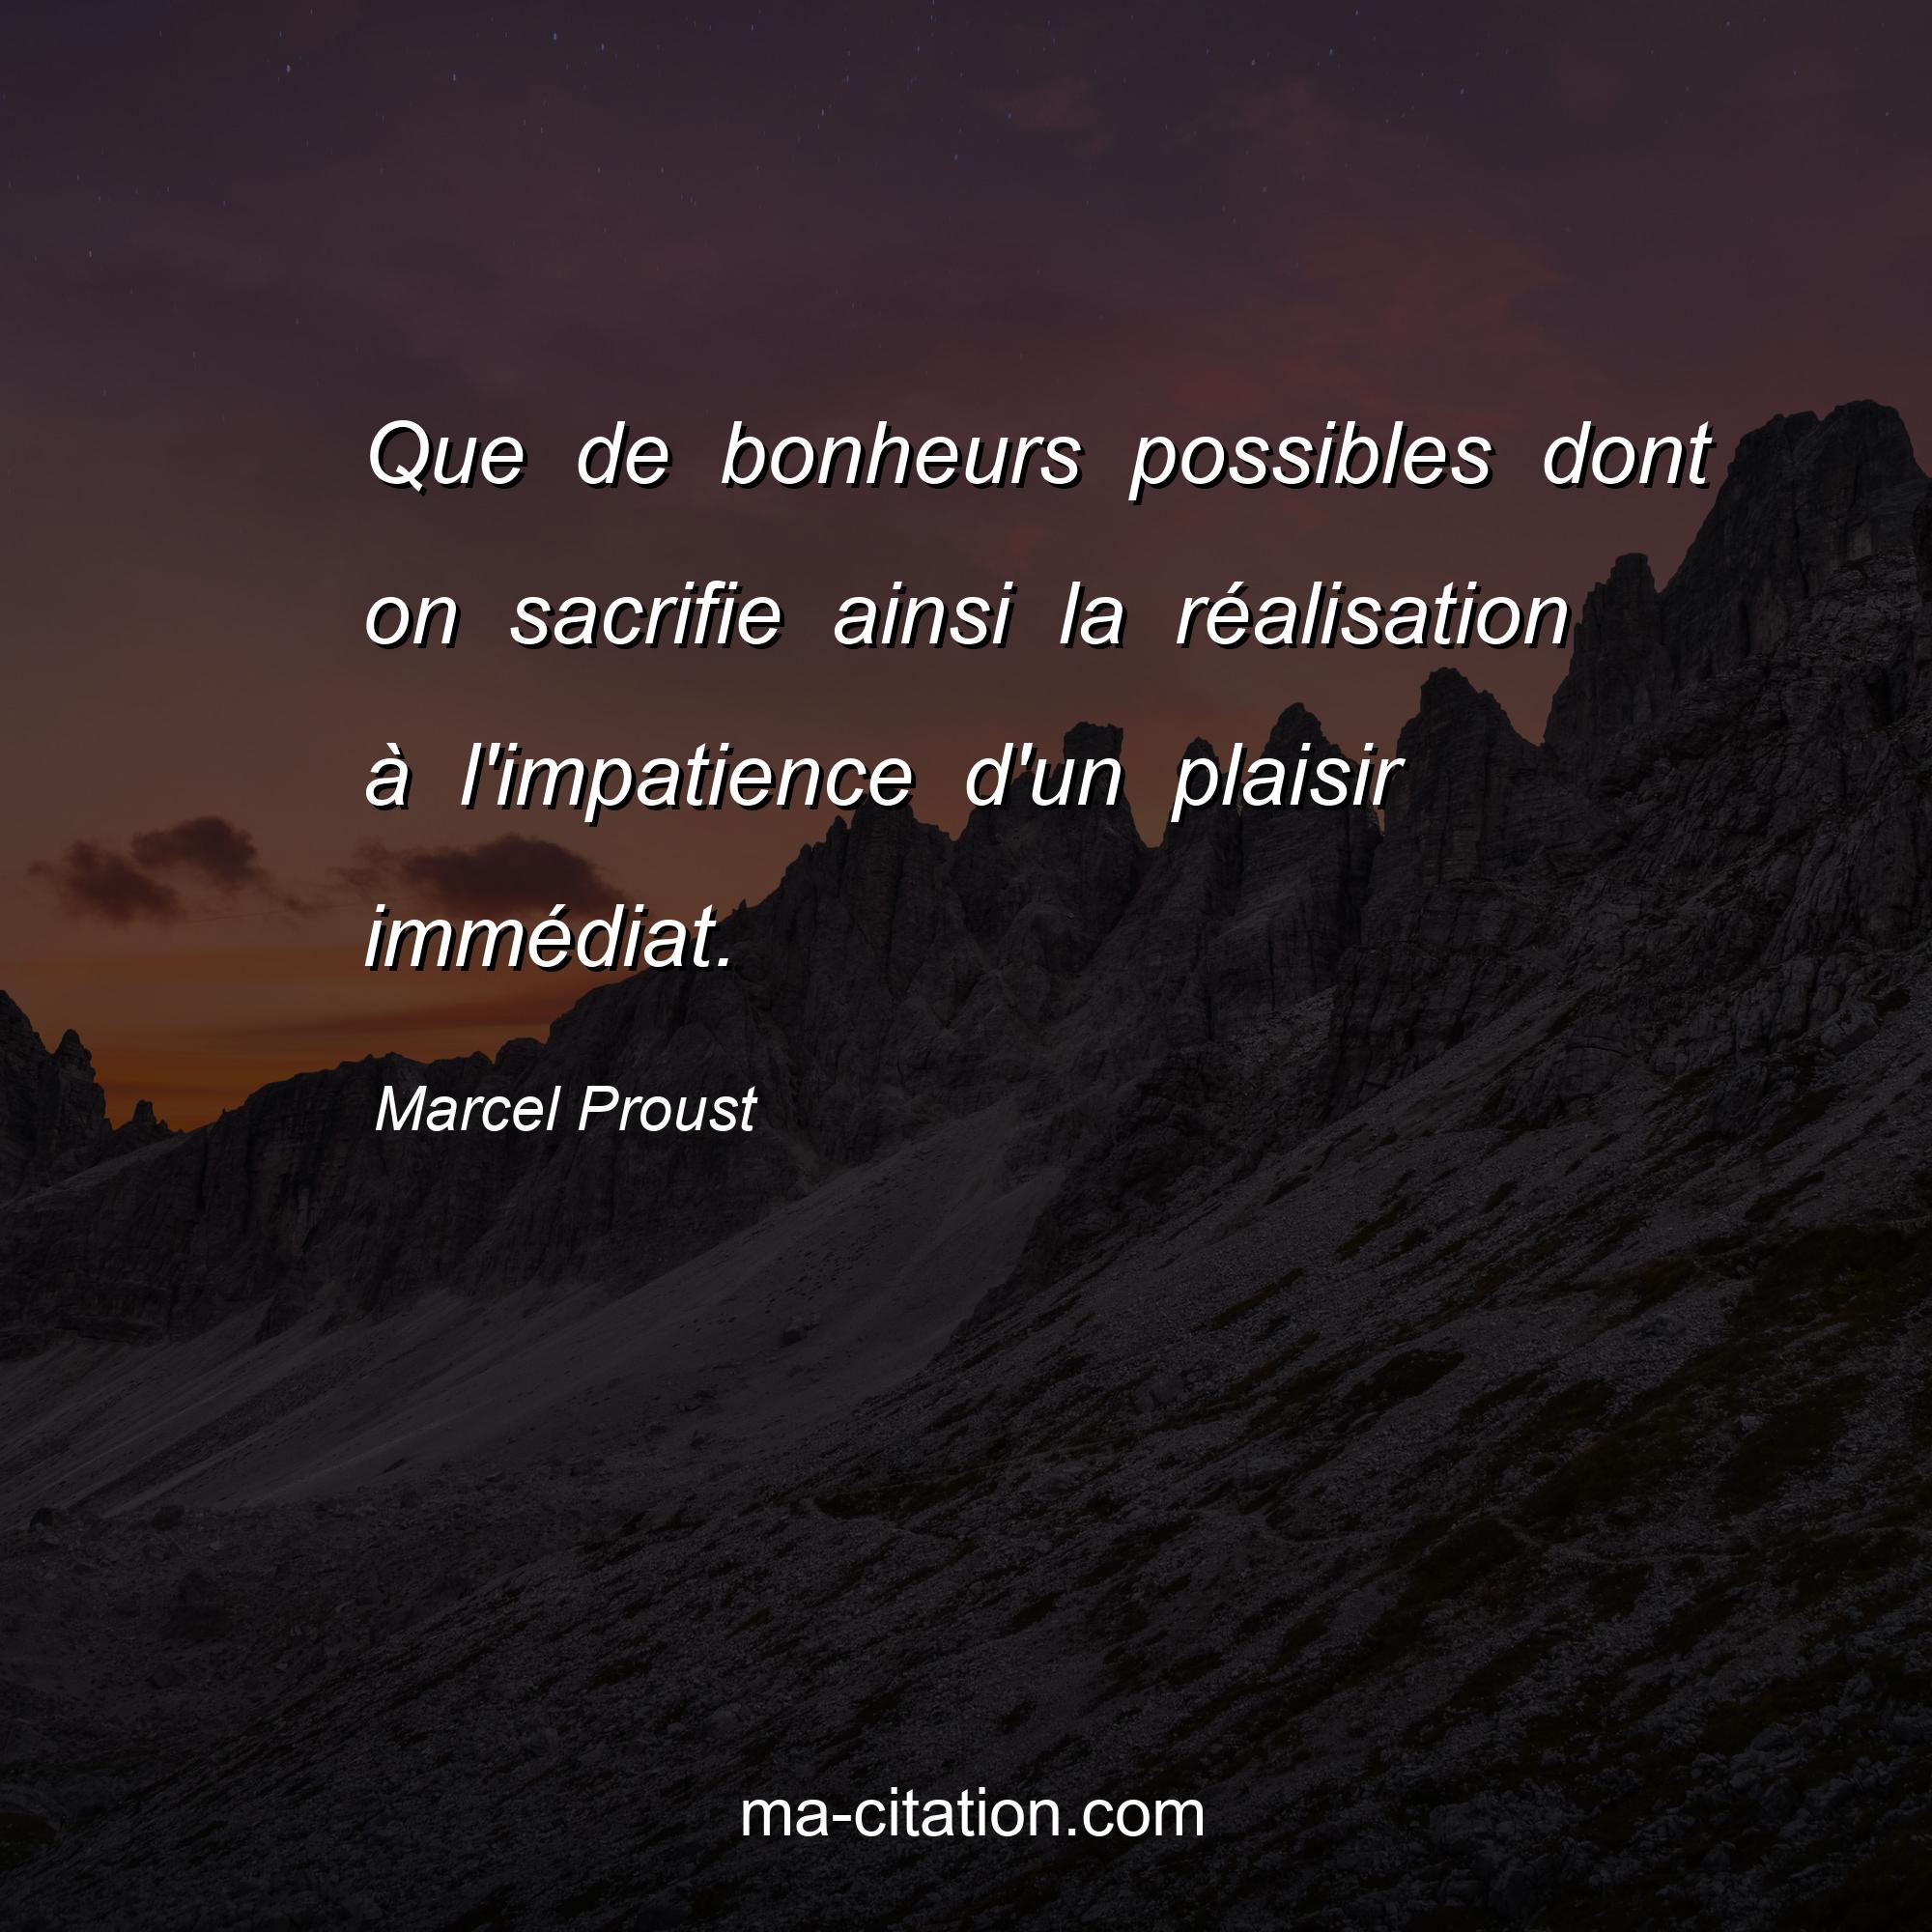 Marcel Proust : Que de bonheurs possibles dont on sacrifie ainsi la réalisation à l'impatience d'un plaisir immédiat.